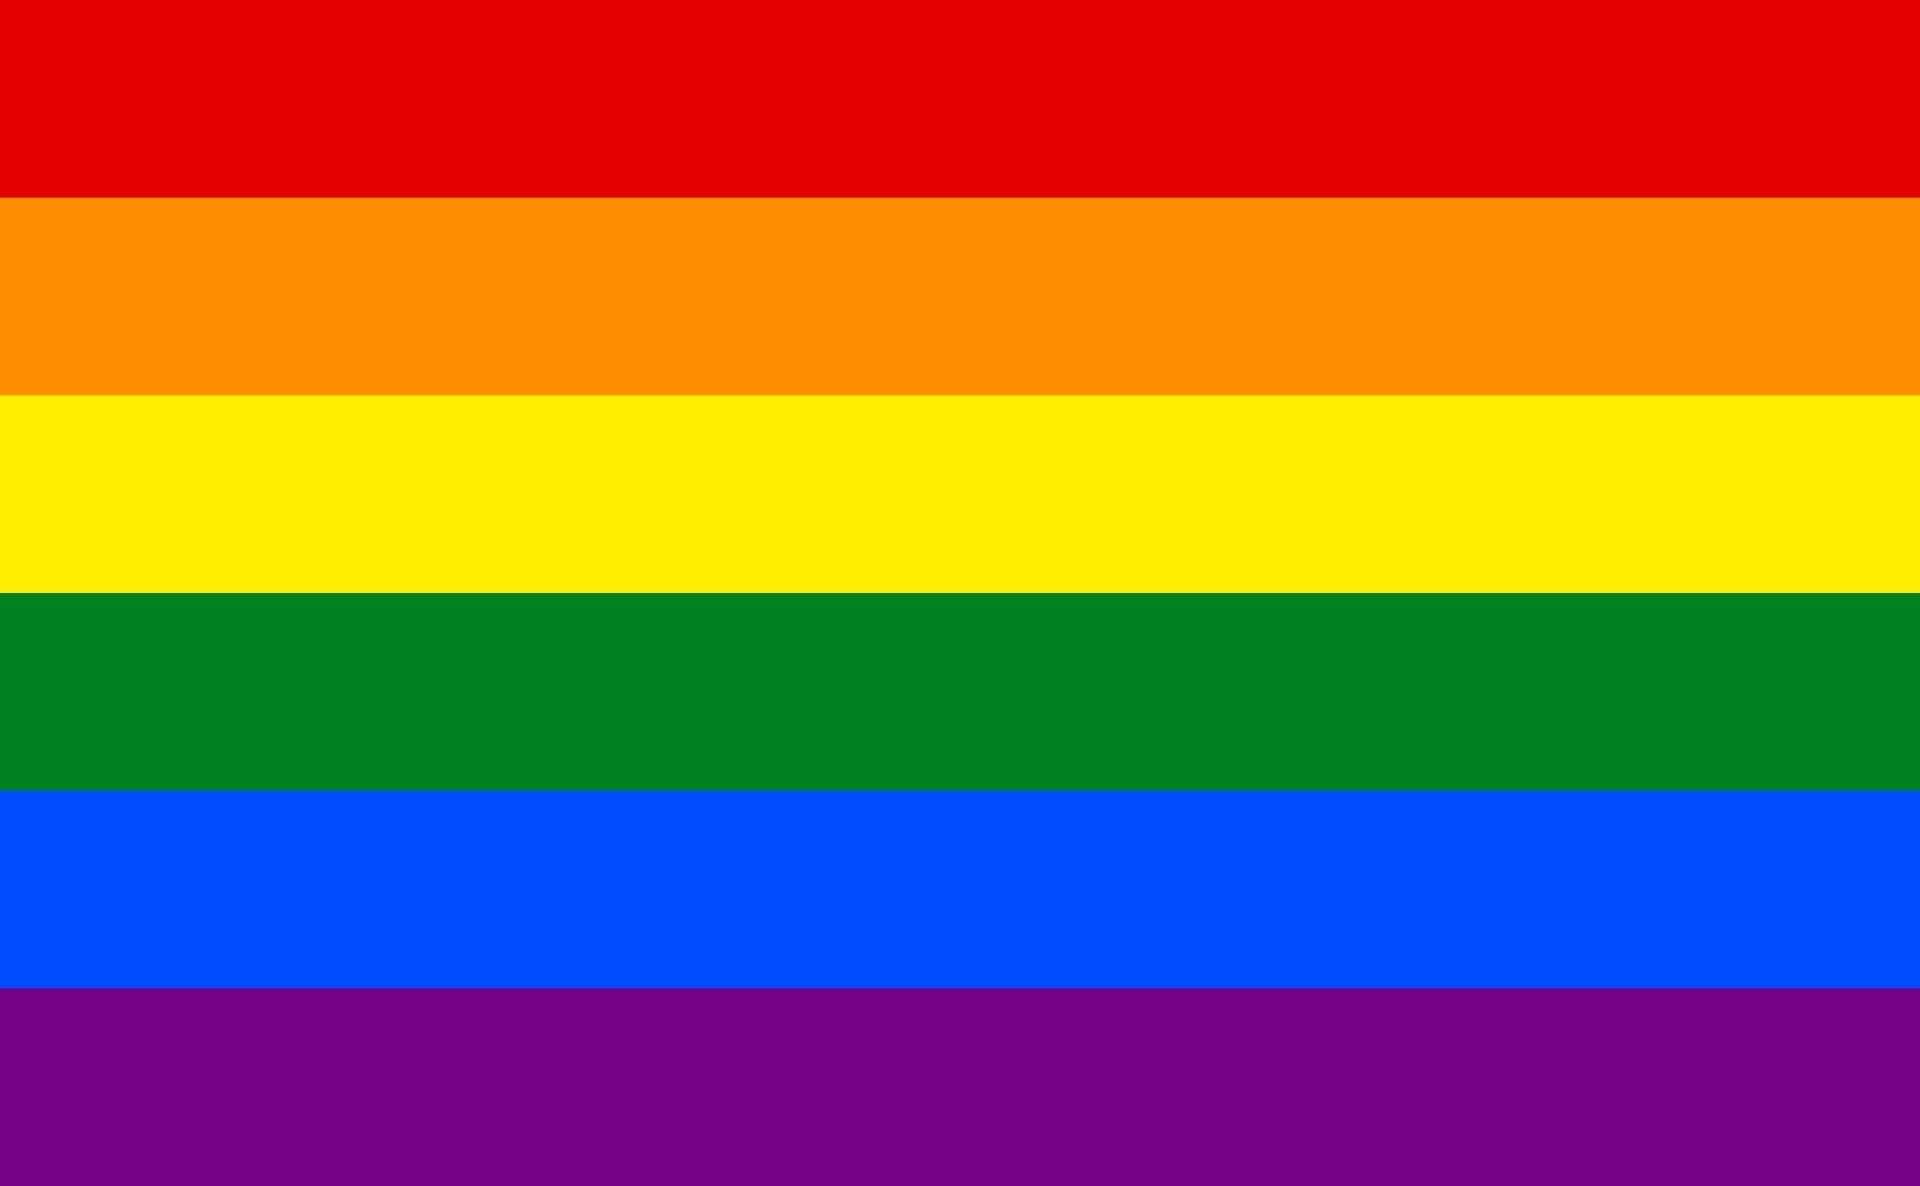 The rainbow pride flag.